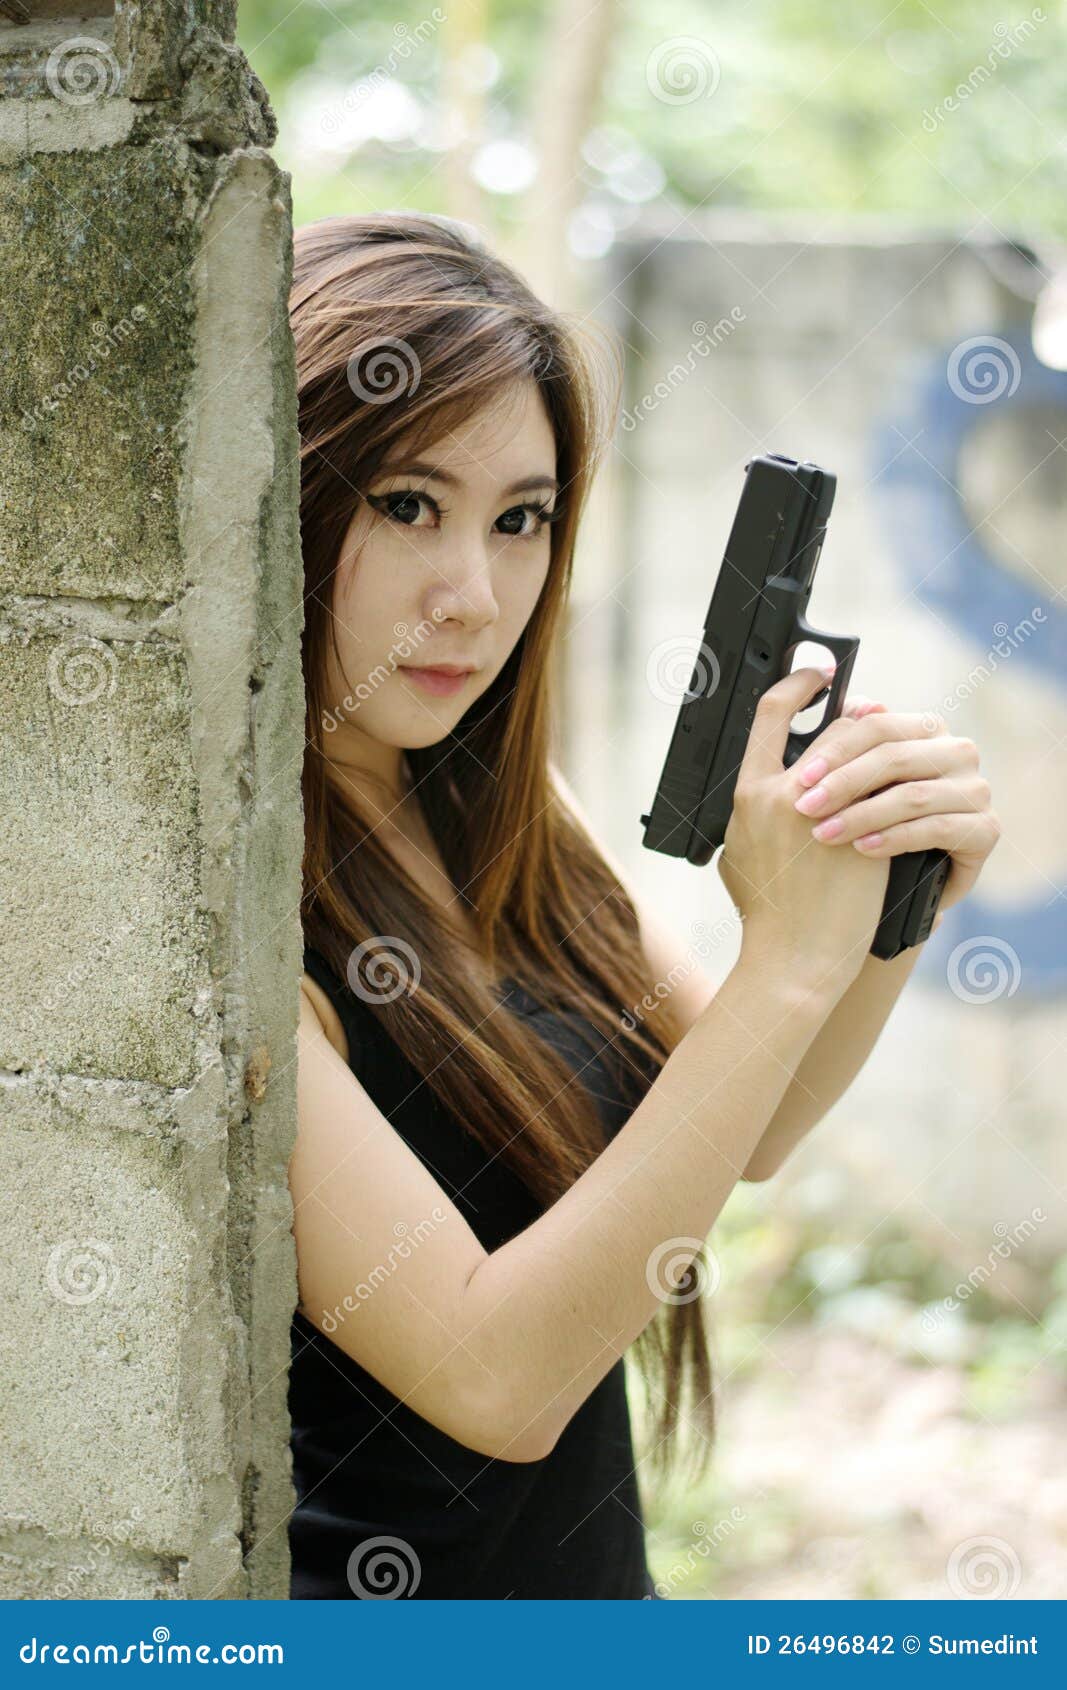 Эротичная девушка у машины с пистолетом